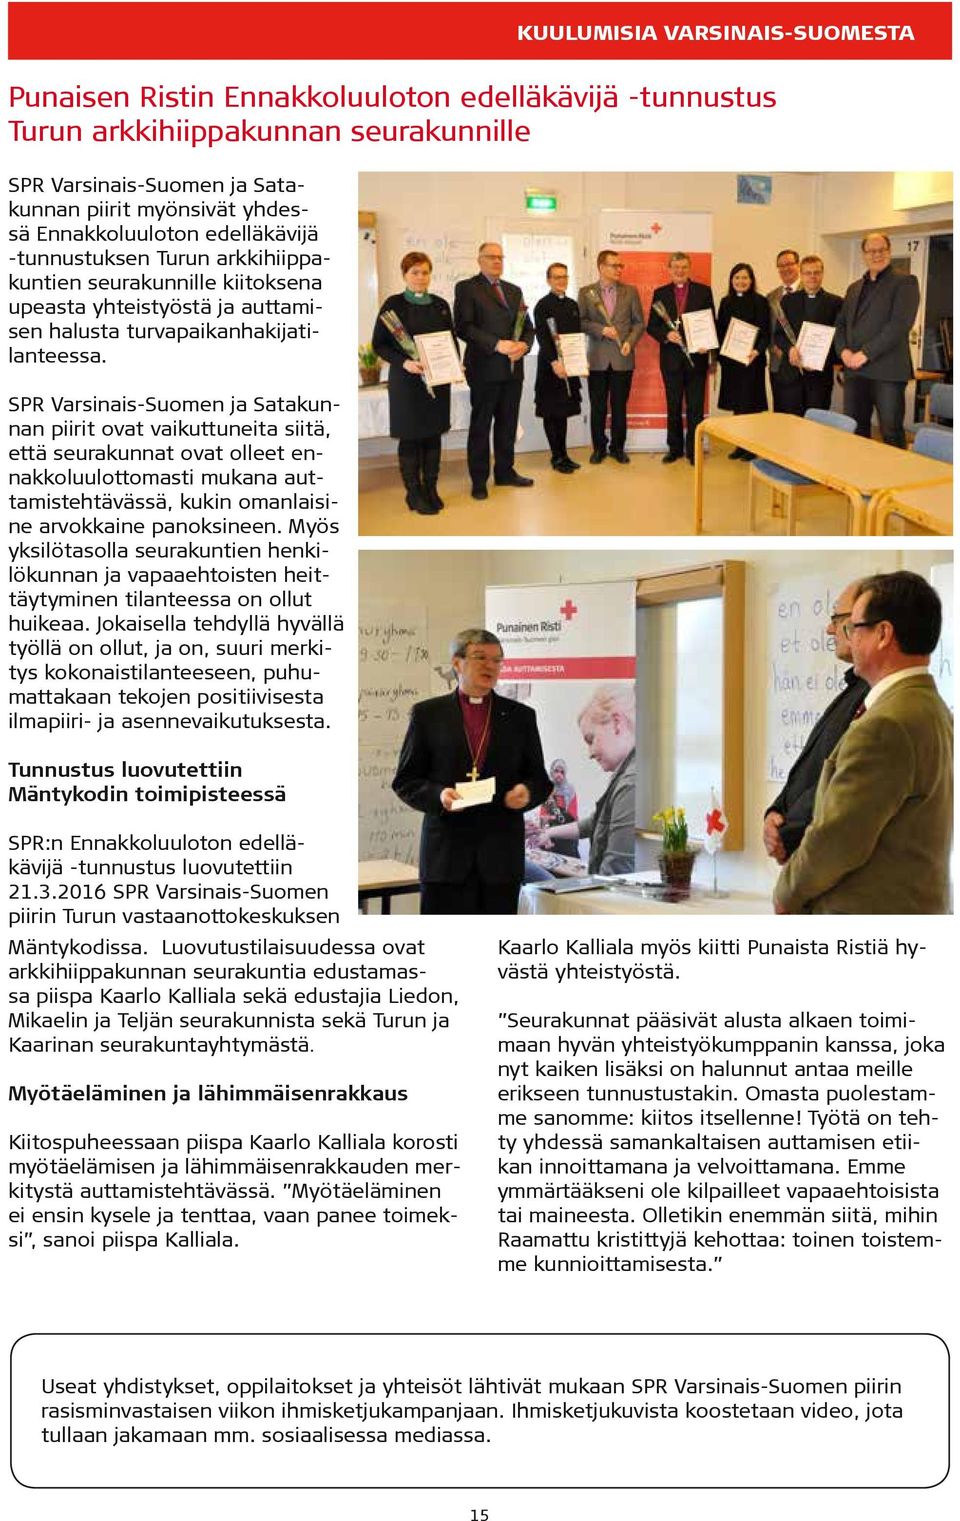 SPR Varsinais-Suomen ja Satakunnan piirit ovat vaikuttuneita siitä, että seurakunnat ovat olleet ennakkoluulottomasti mukana auttamistehtävässä, kukin omanlaisine arvokkaine panoksineen.